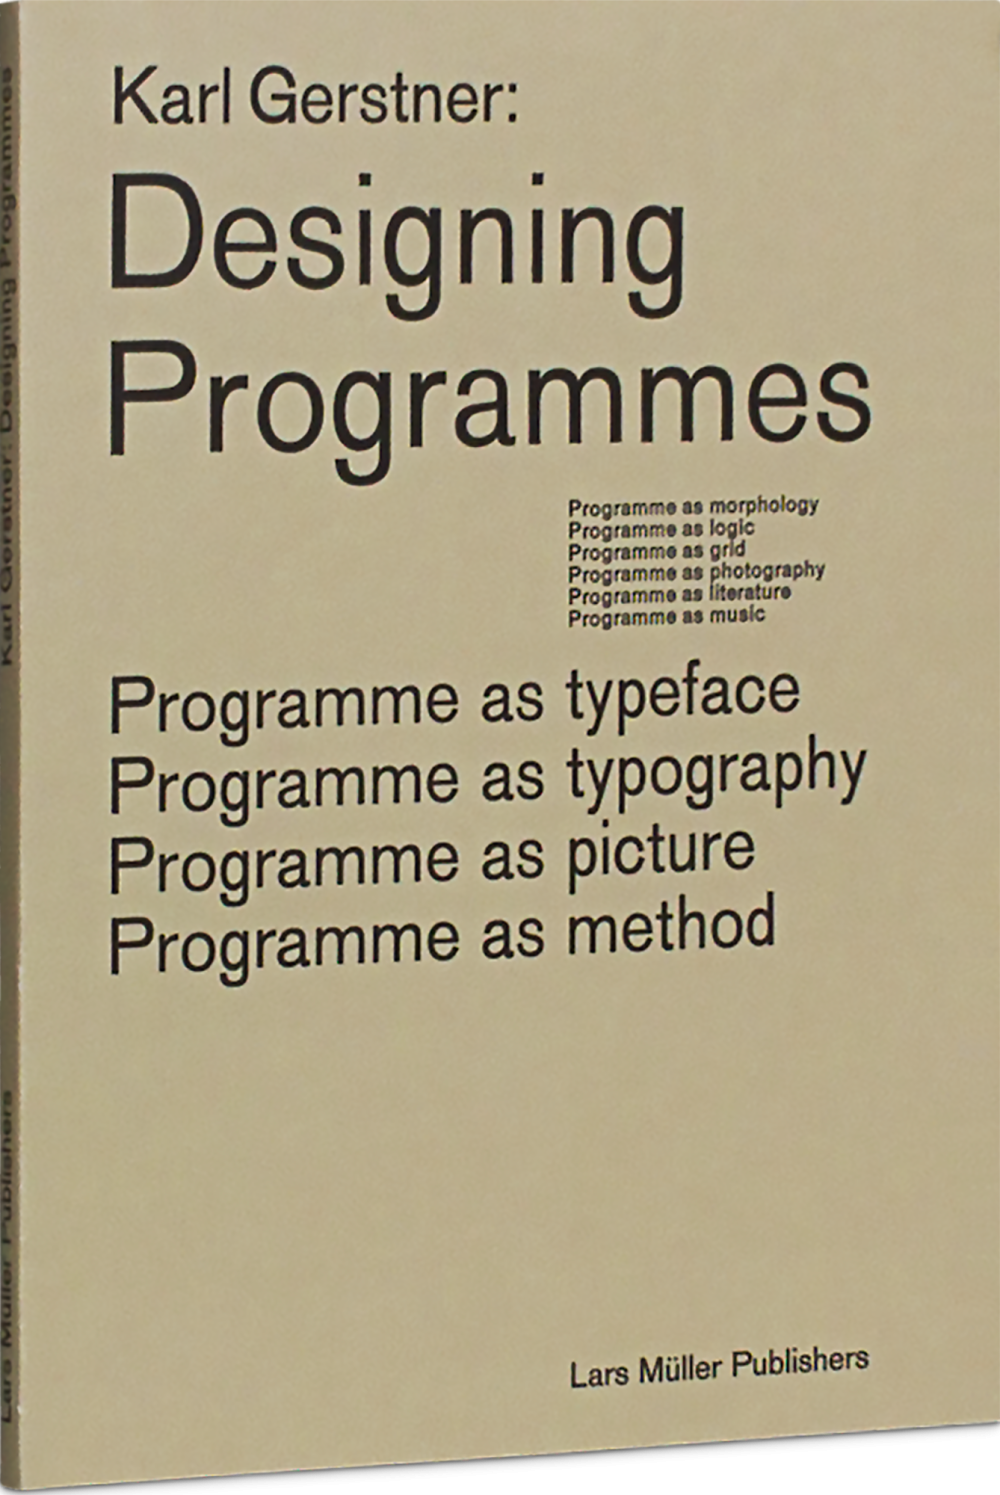 激安単価で希少 Karl Gerstner: Designing Programmes 洋書